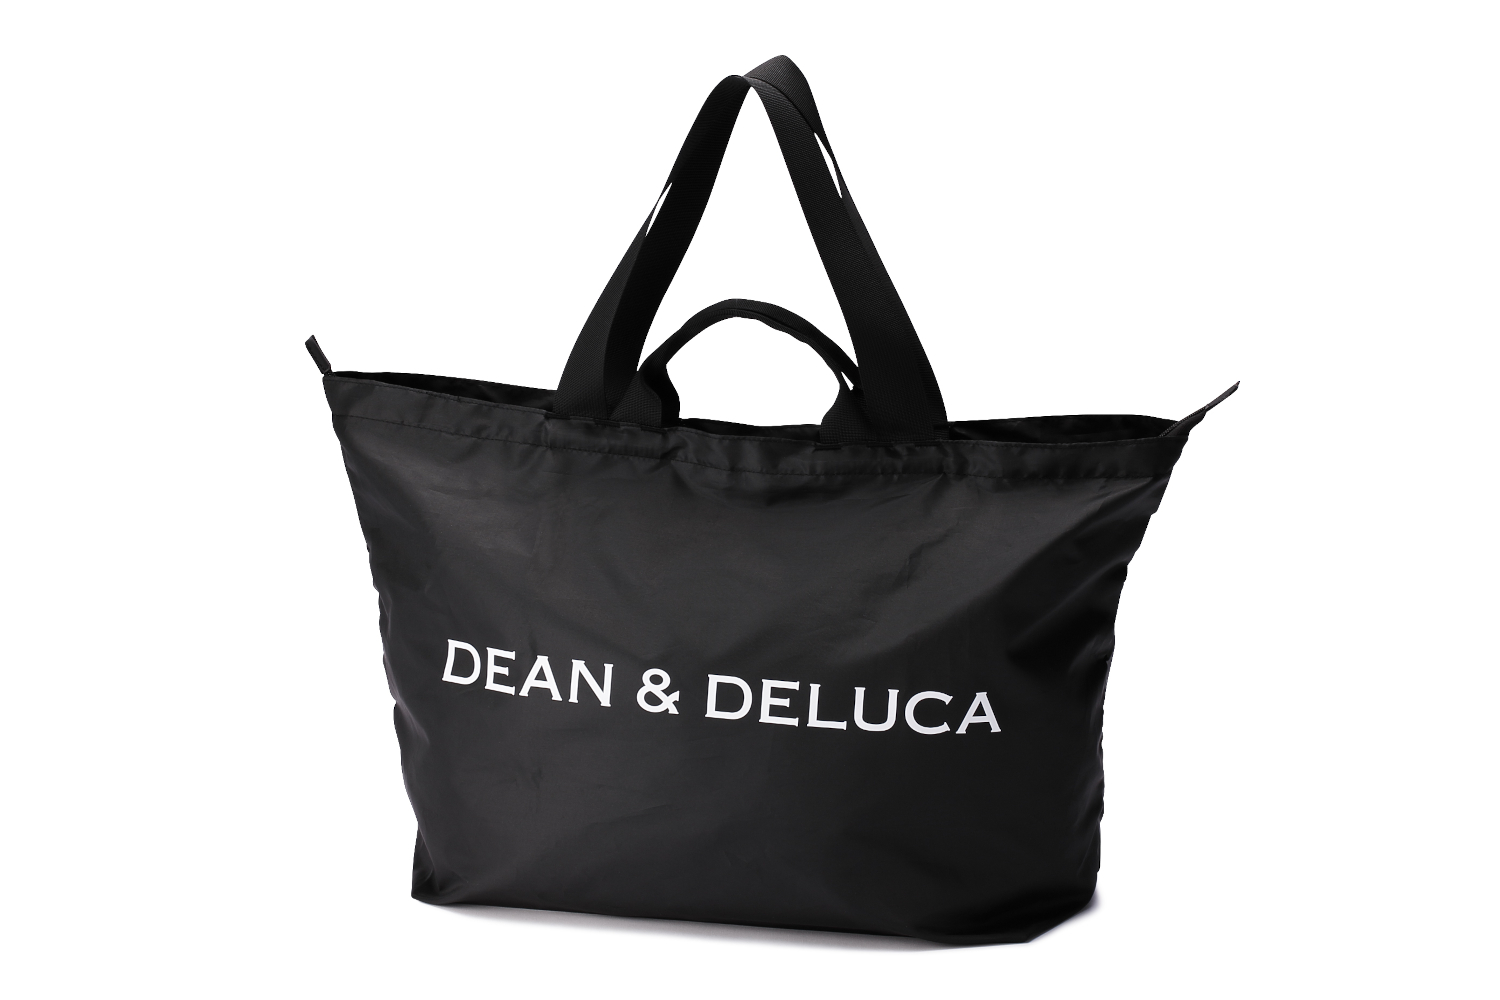 DEAN ＆ DELUCA、たっぷり収納でコンパクトに持ち運べる「パッカブルトートバッグ ブラック」 - グルメ Watch